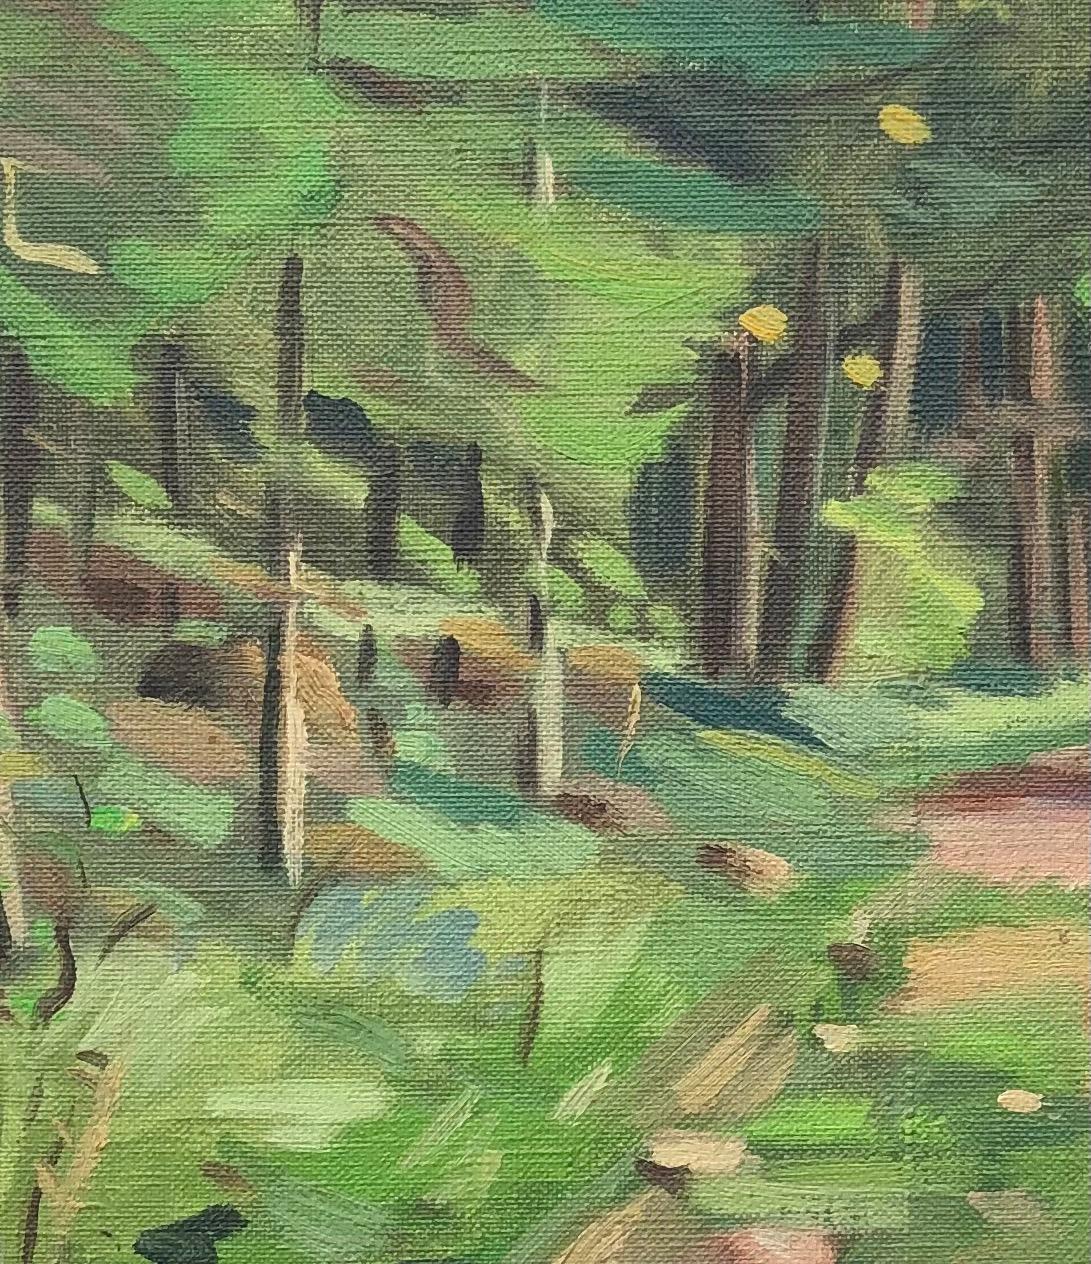 Gestrüpppfad (Grau), Landscape Painting, von Alexis Louis Roche